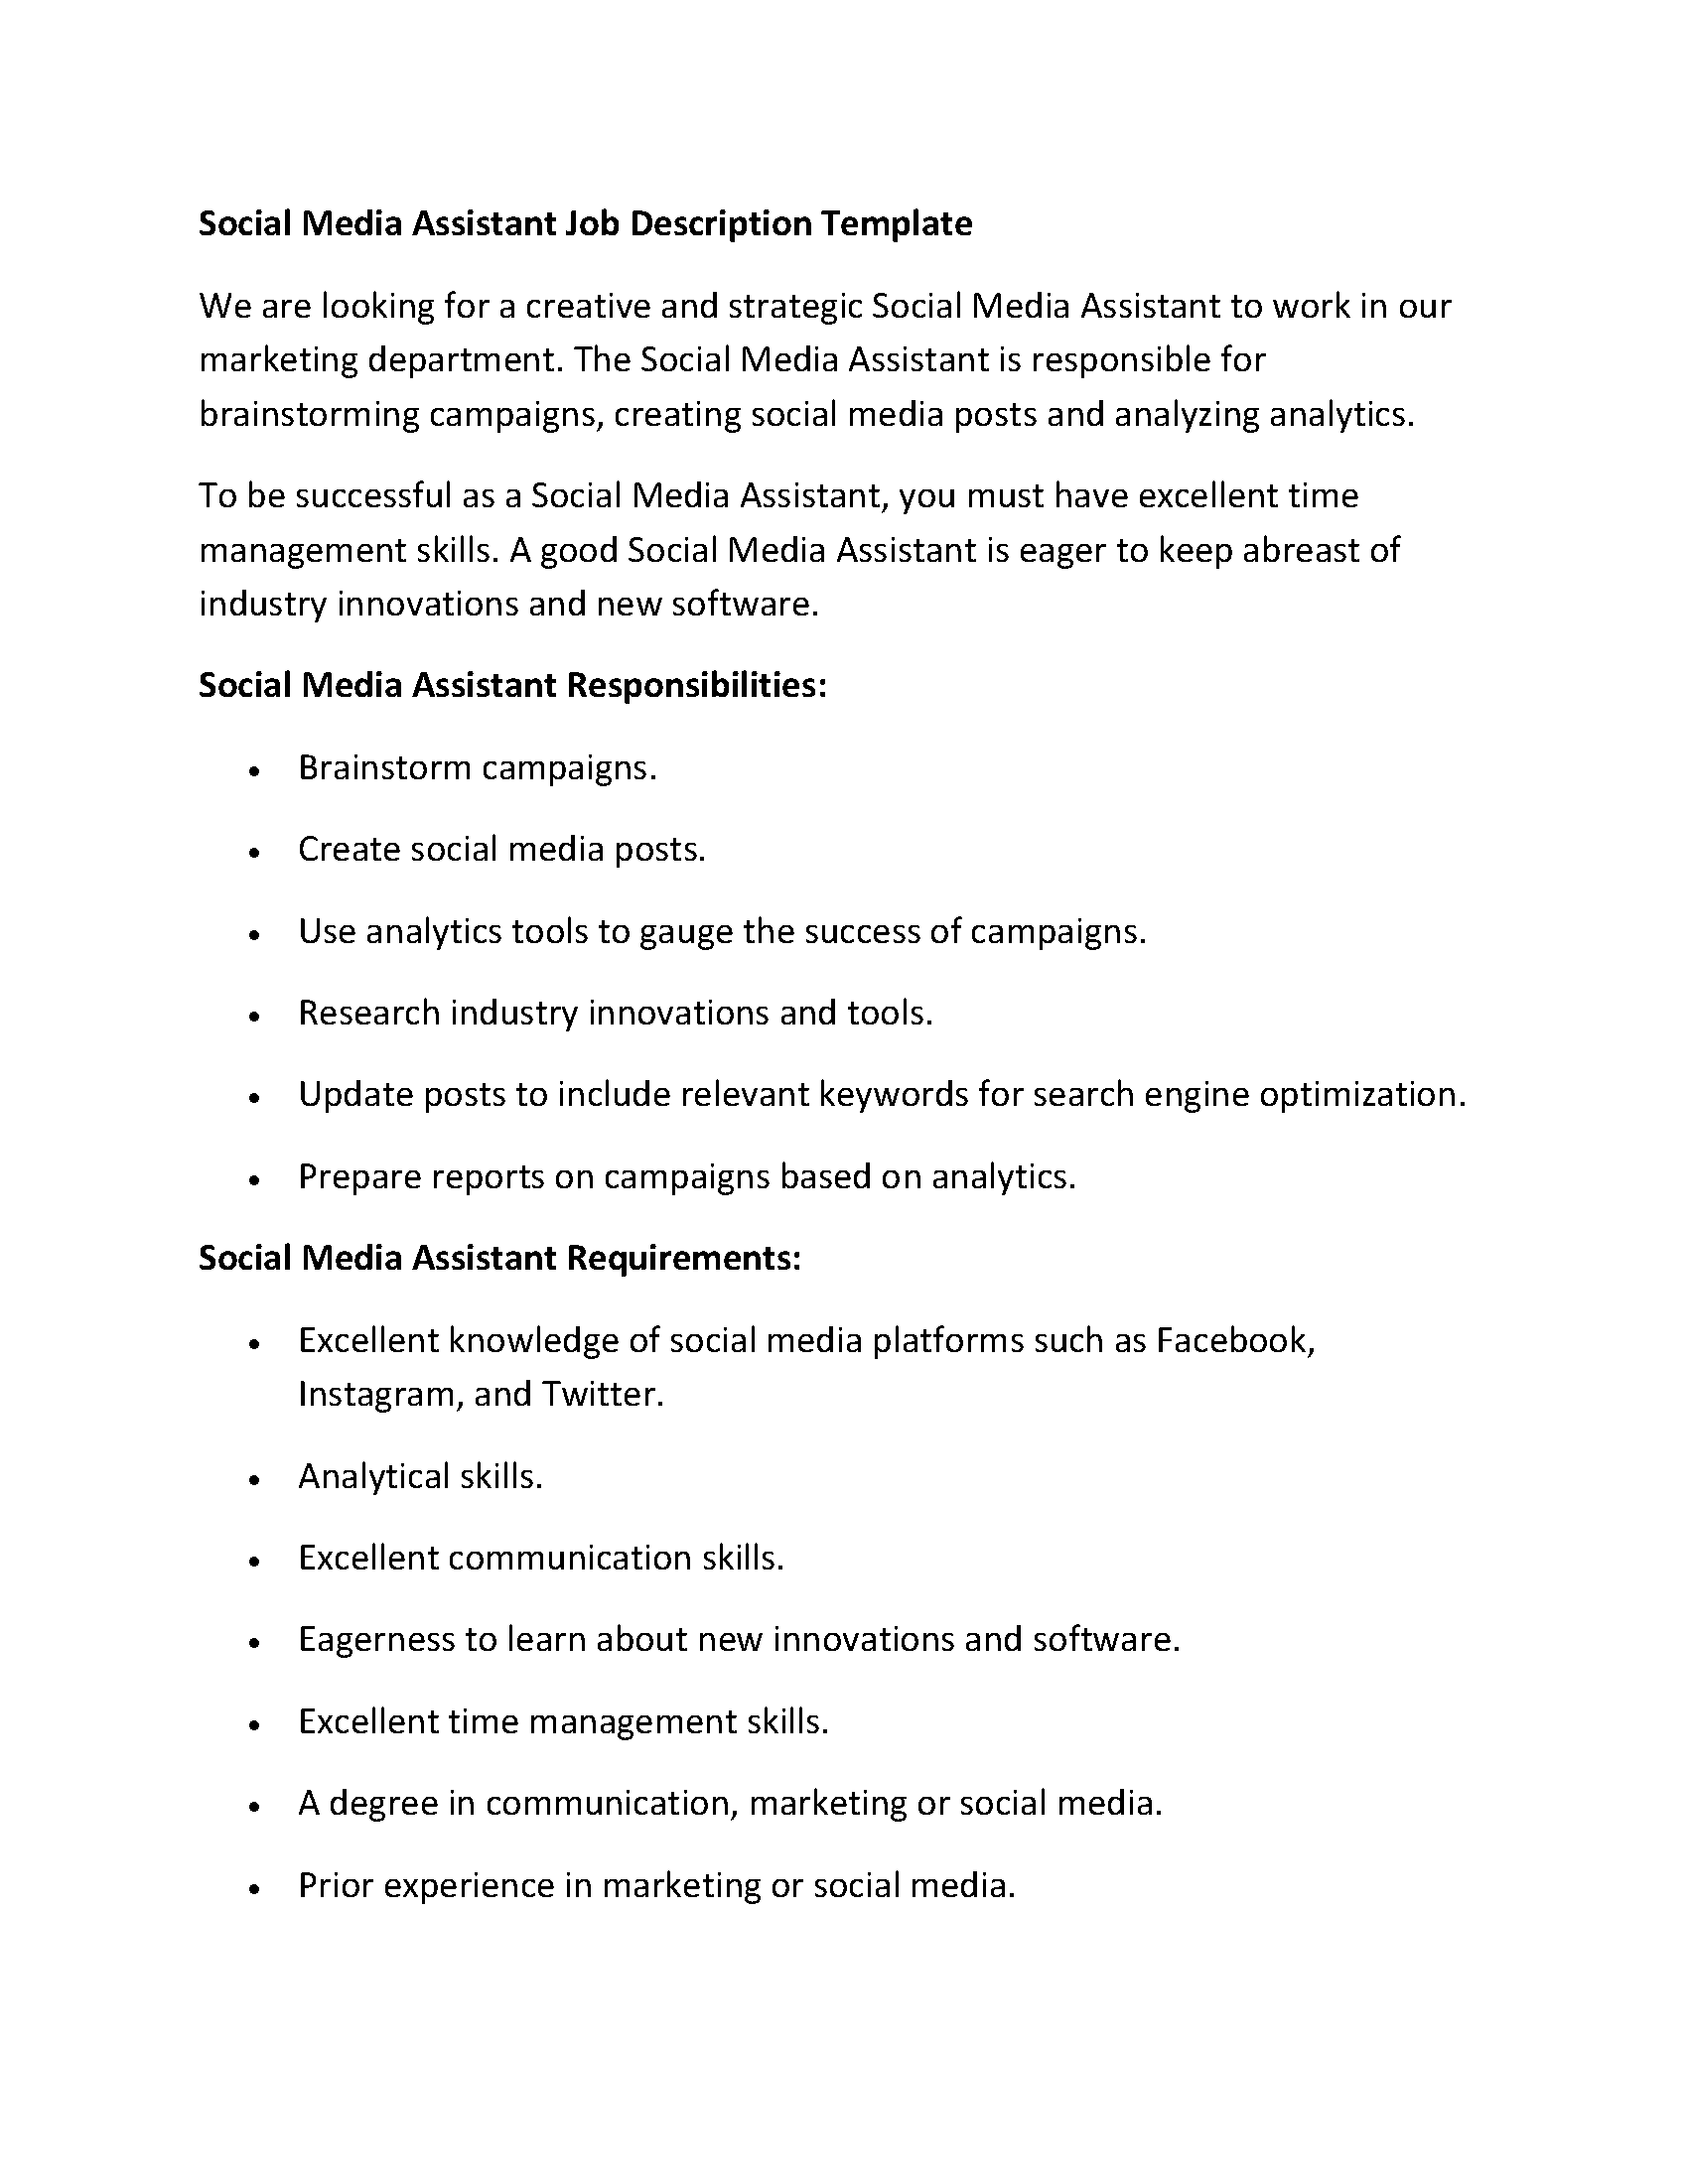 Social Media Assistant Job Description Template